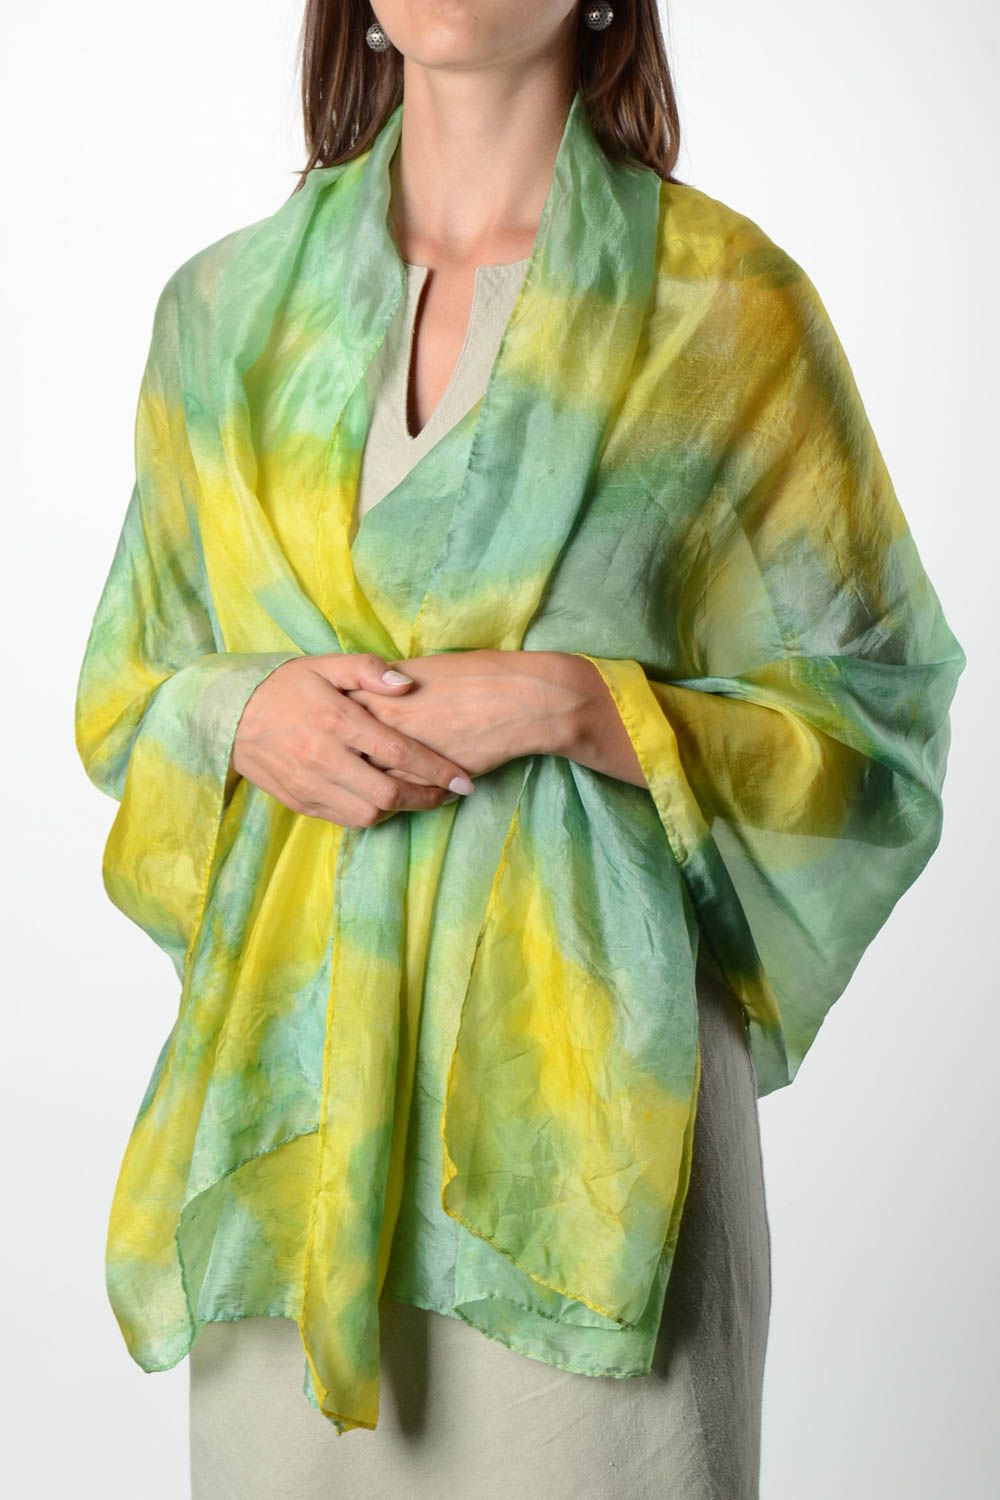 Платок ручной работы платок из шелка женский аксессуар в технике батик фото 1